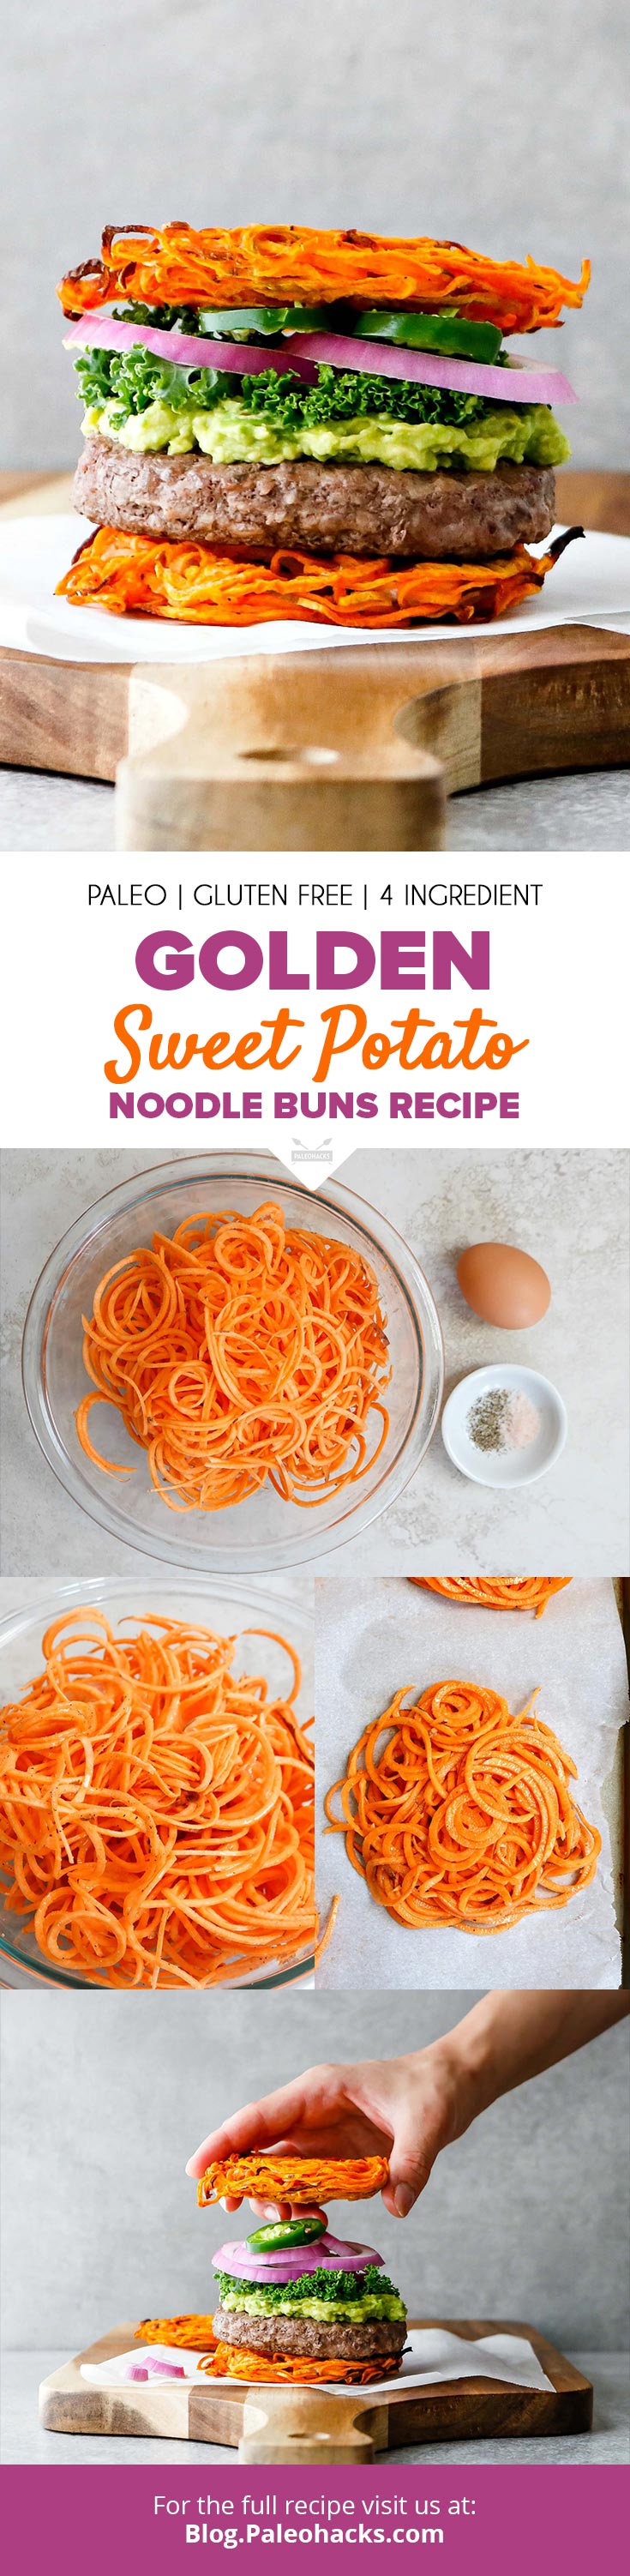 Forget lettuce wraps. Ditch the grains and create Golden Noodle Hamburger Buns using crispy sweet potato noodles.